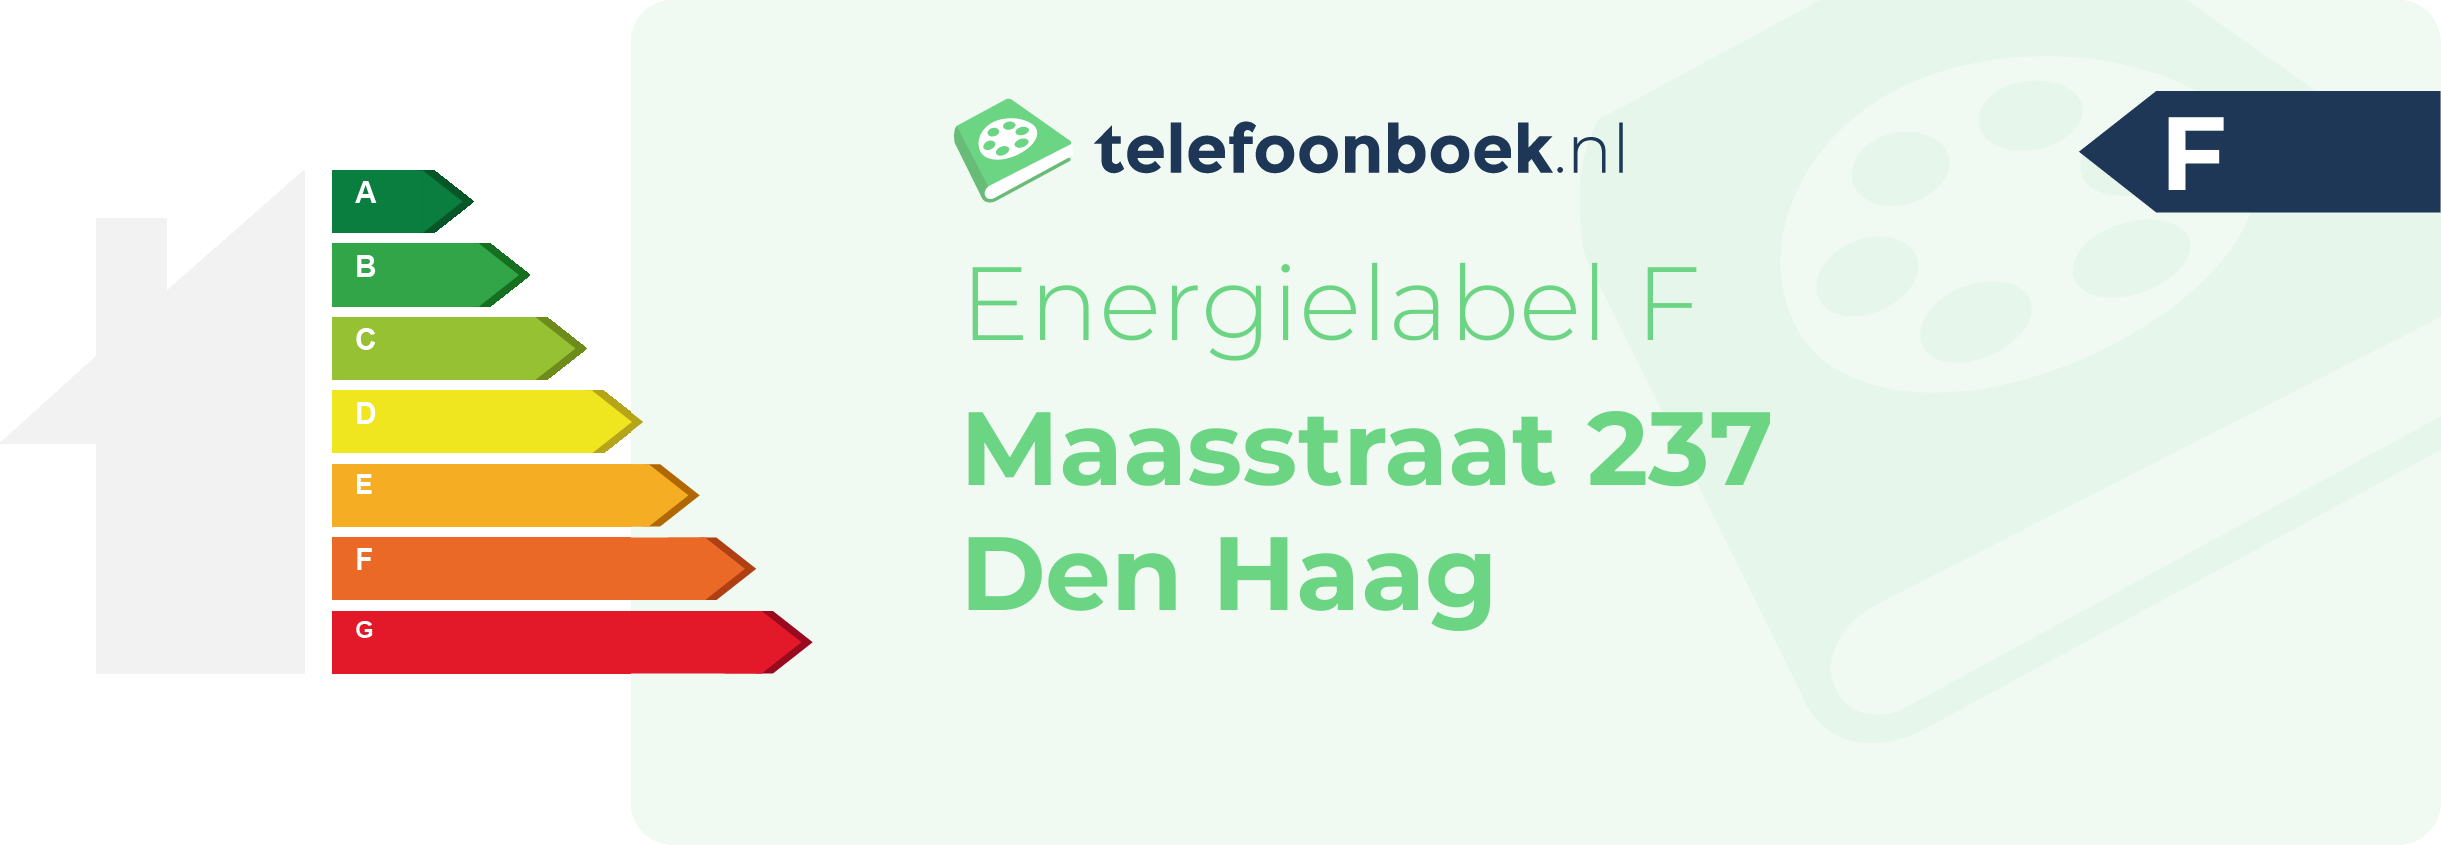 Energielabel Maasstraat 237 Den Haag